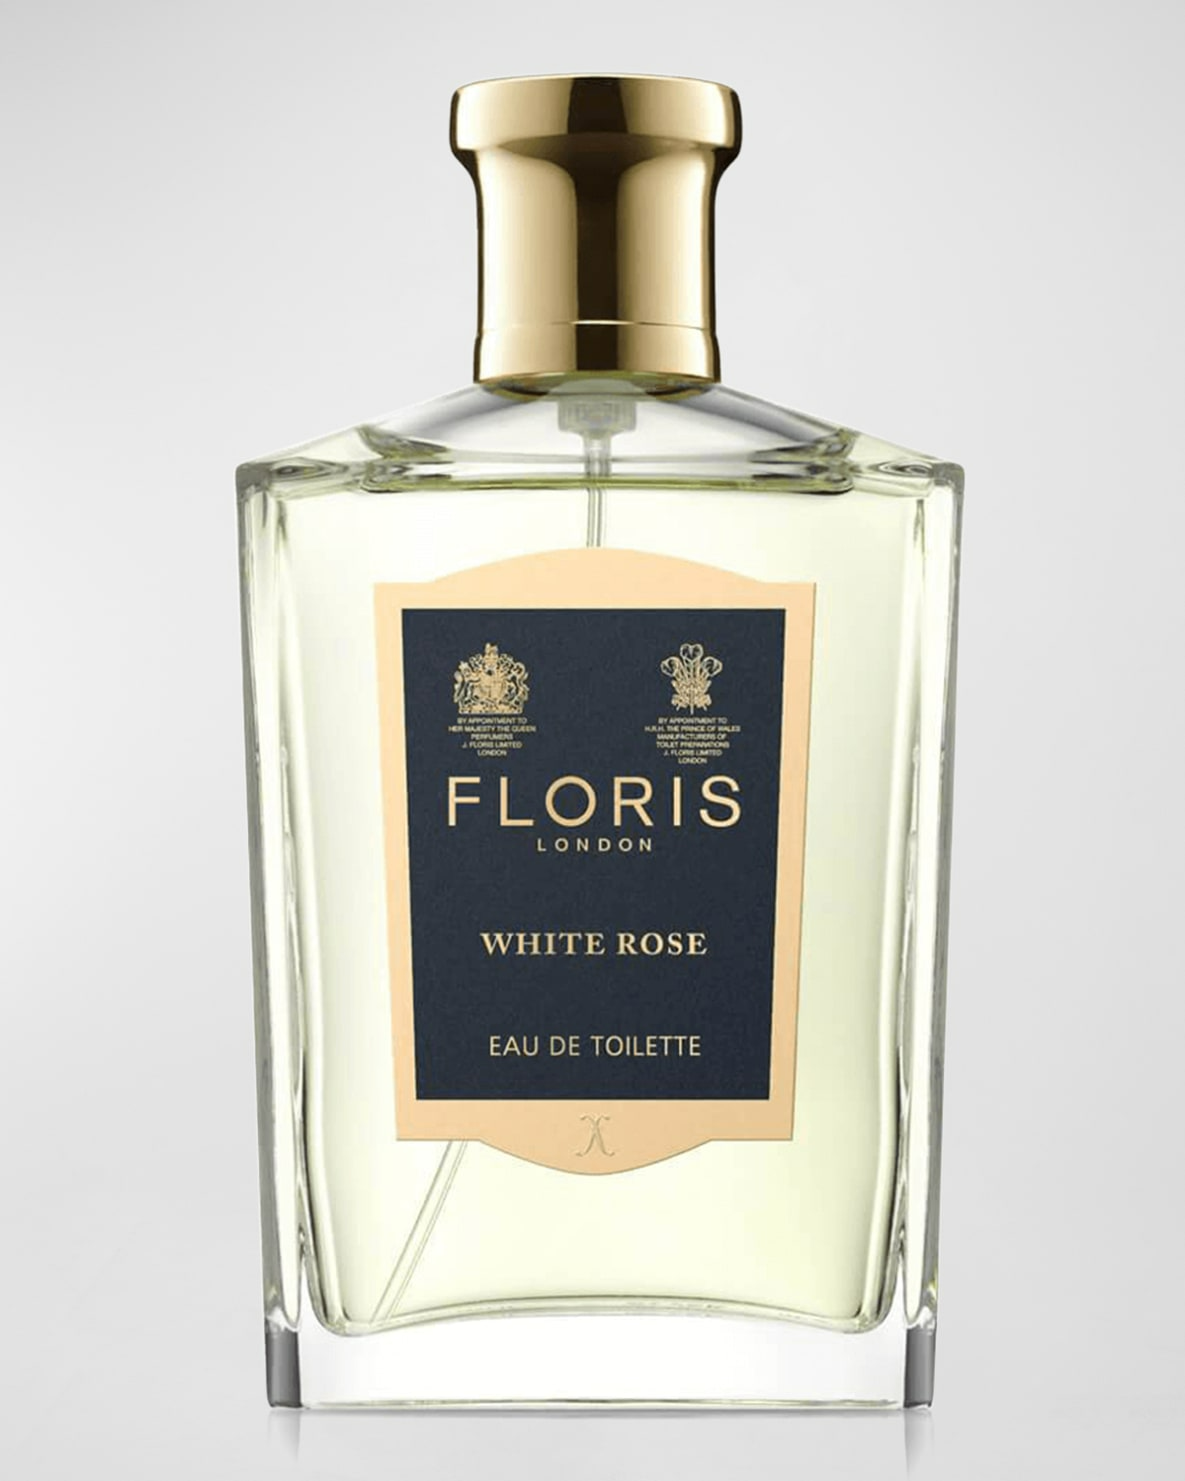 Floris London White Rose Eau de Toilette - 3.4 Oz